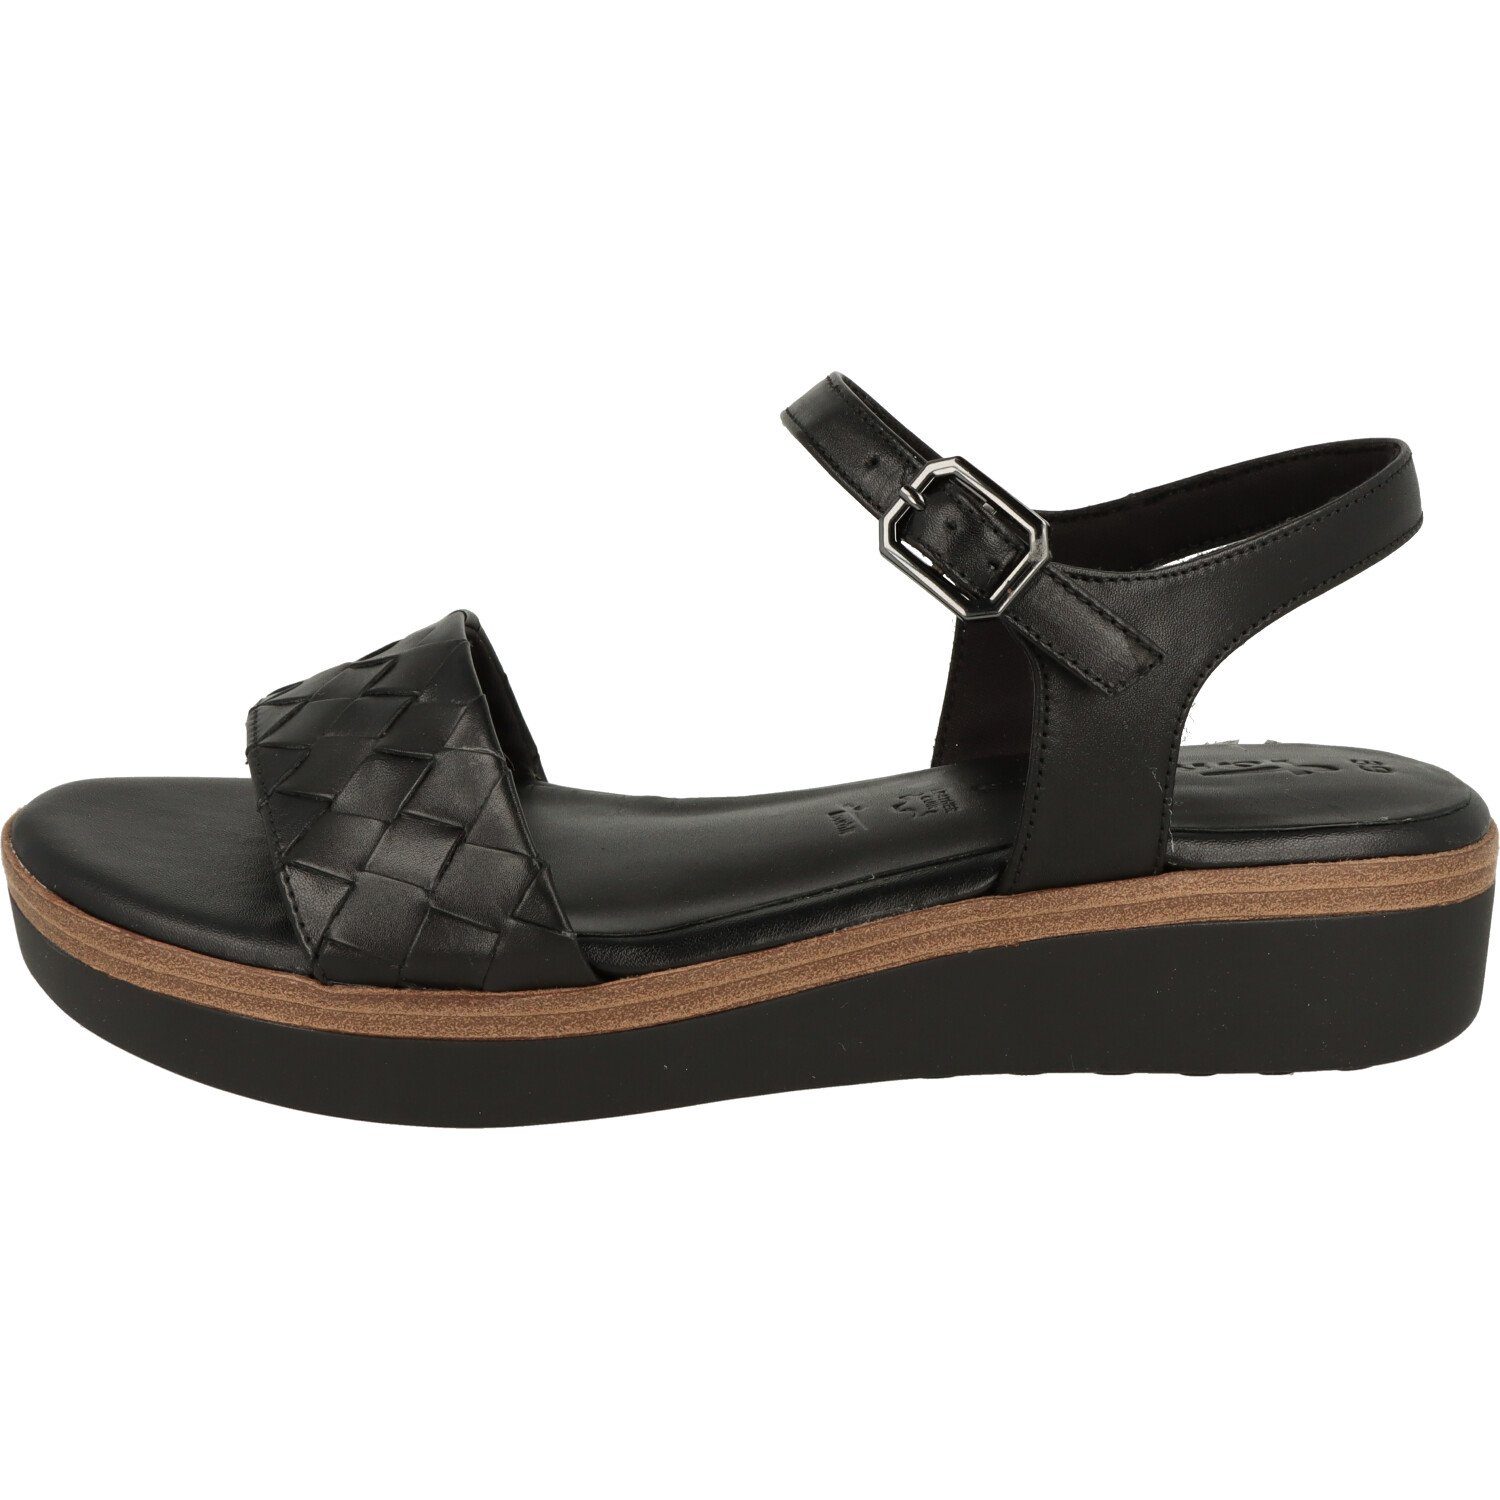 Tamaris Damen Schuhe Sandalette Sandalette Komfort Leder Black 1-28216-20 Riemchen